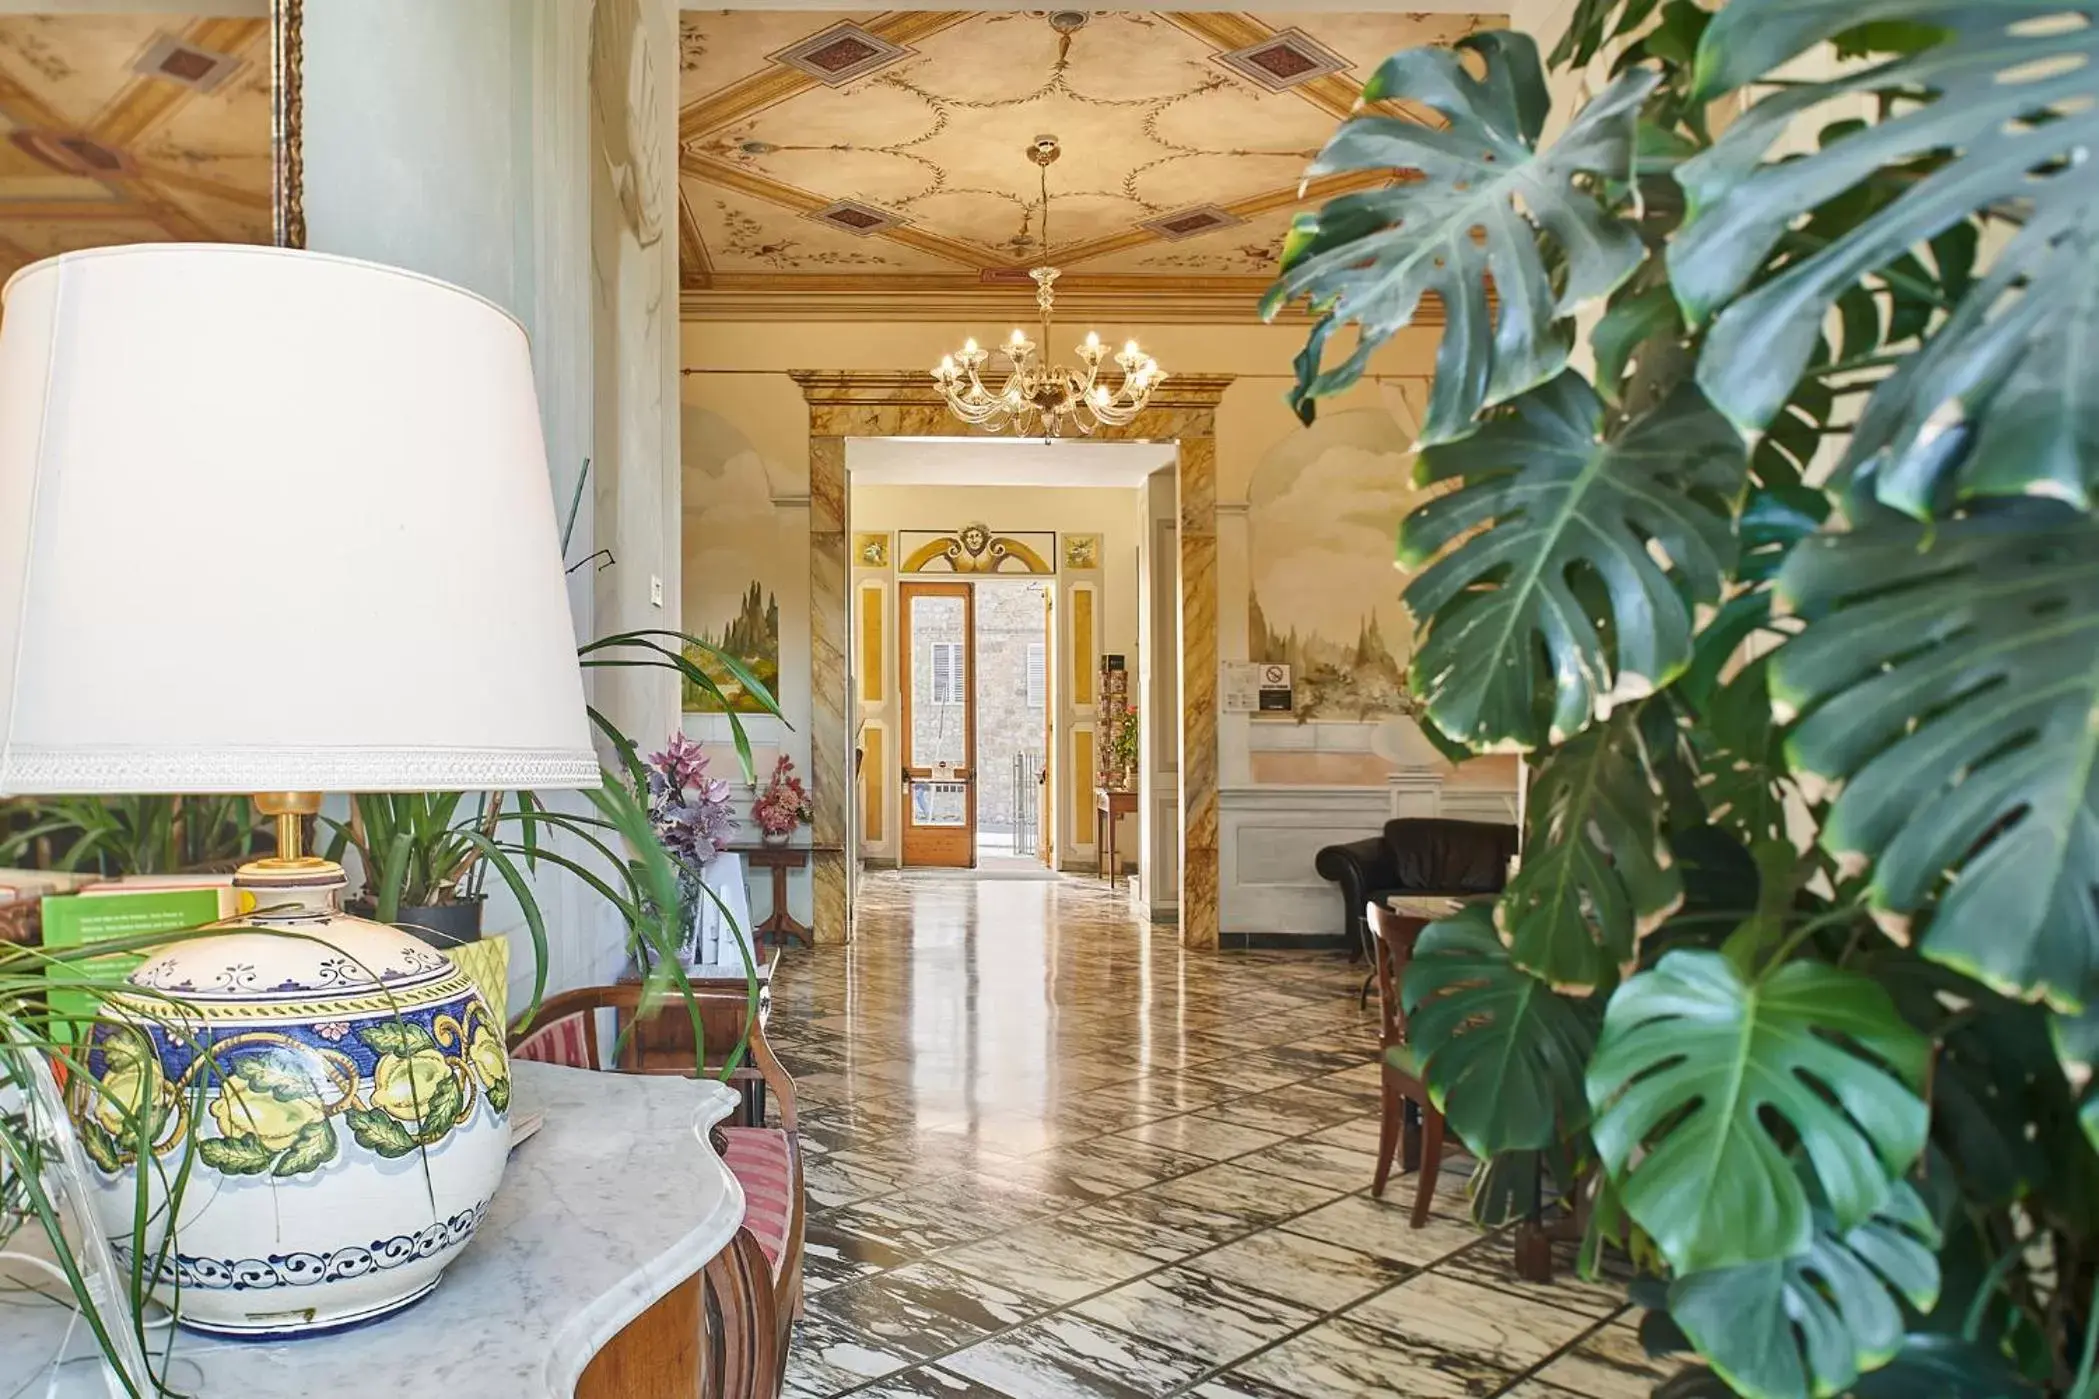 Lobby or reception in Albergo Chiusarelli